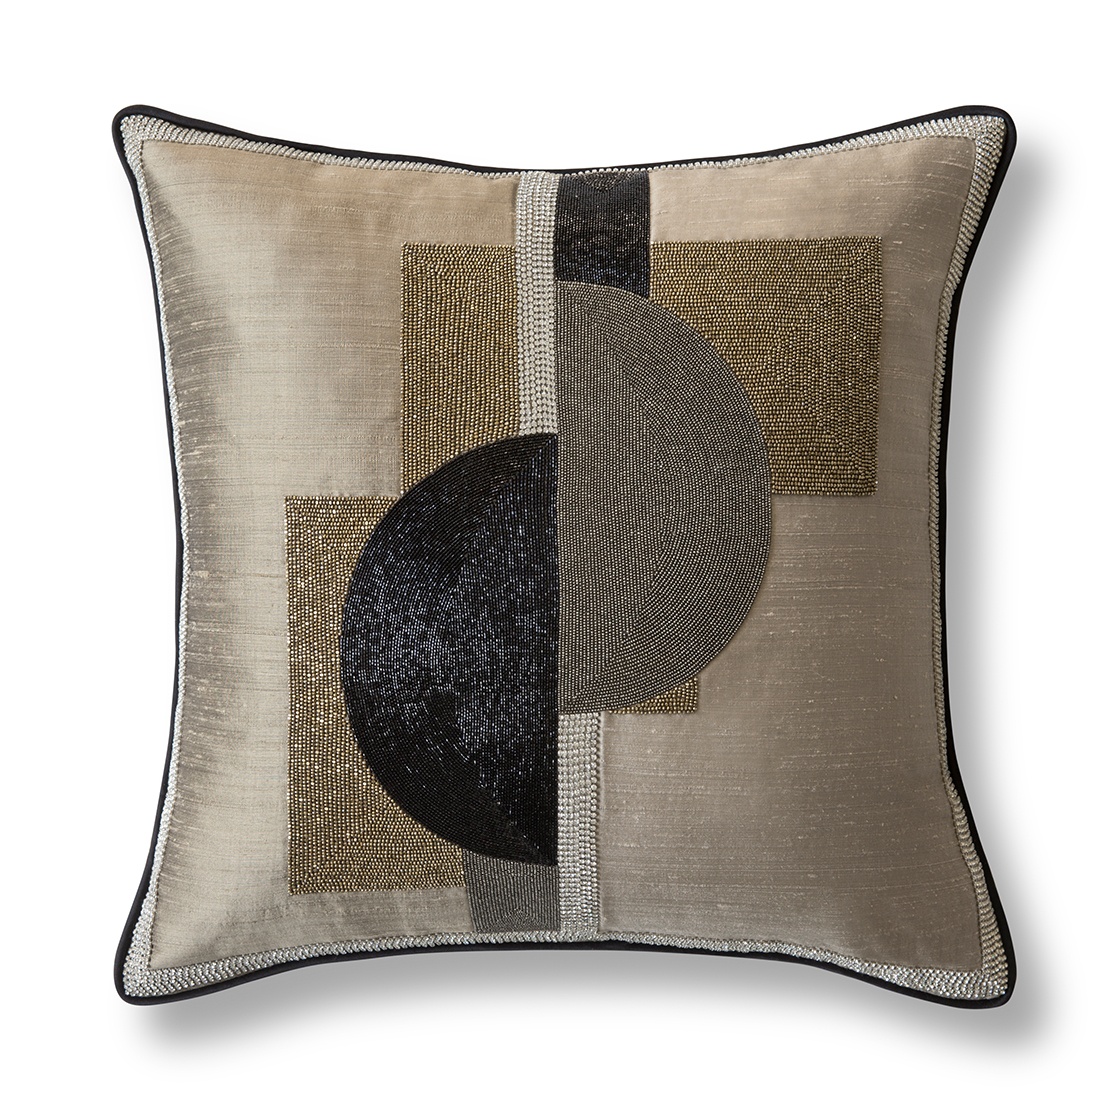 Piet cushion in Erne silk - Silver birch - Beaumont & Fletcher